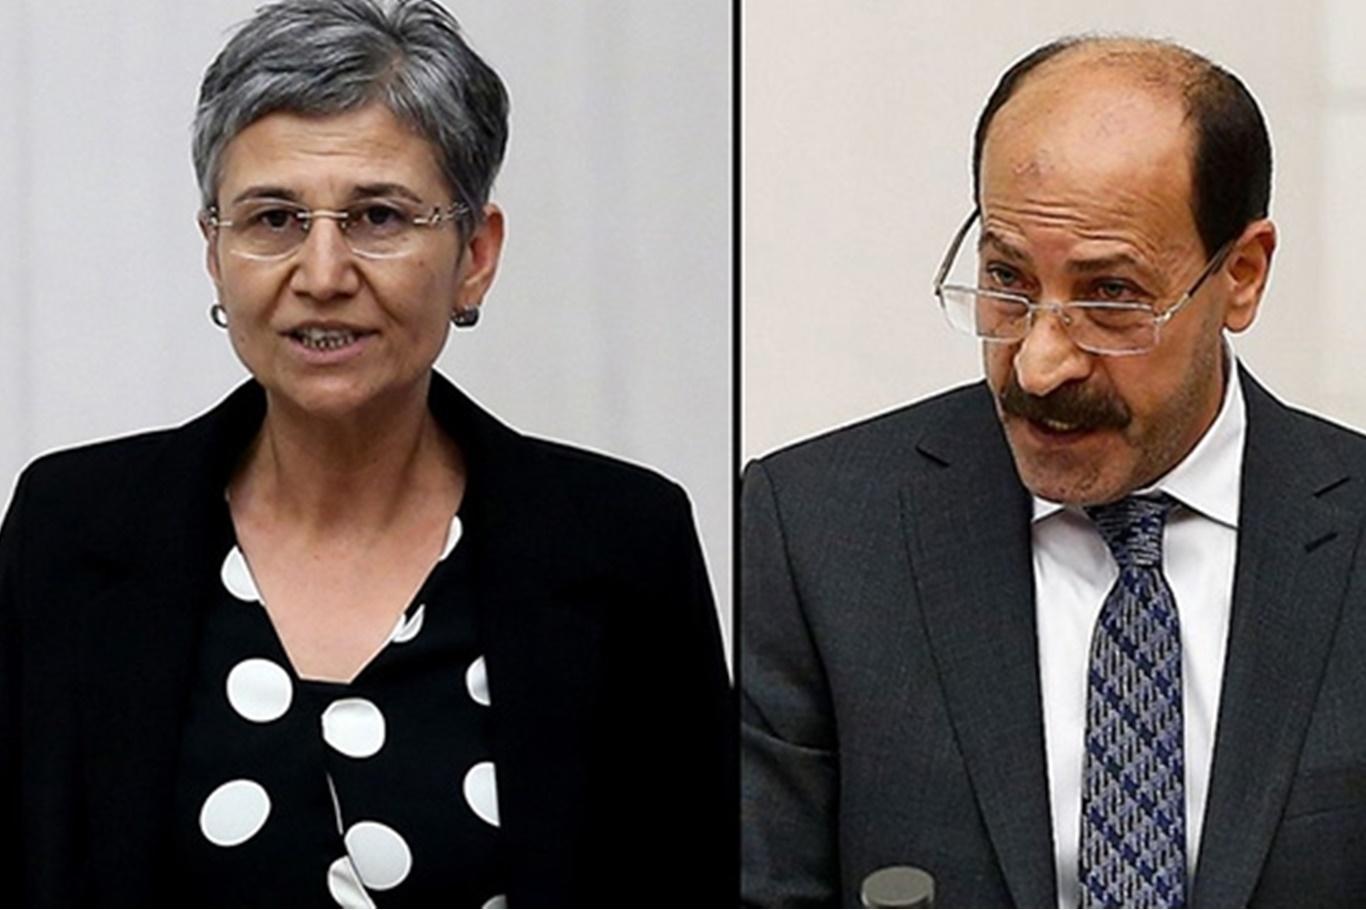 Vekilliği düşürülen HDPli 2 milletvekili için yakalama kararı çıkartıldı